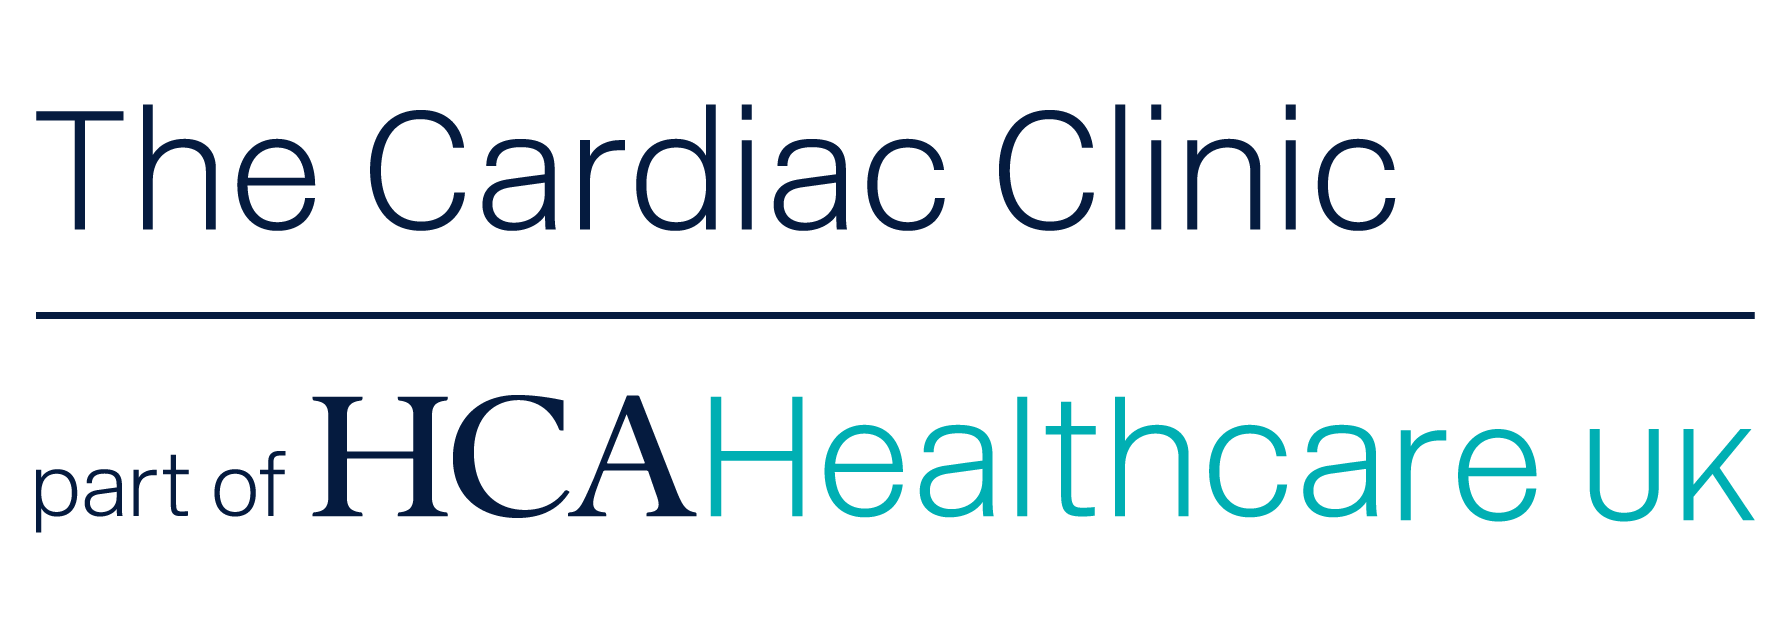 The Cardiac Clinic_clinic